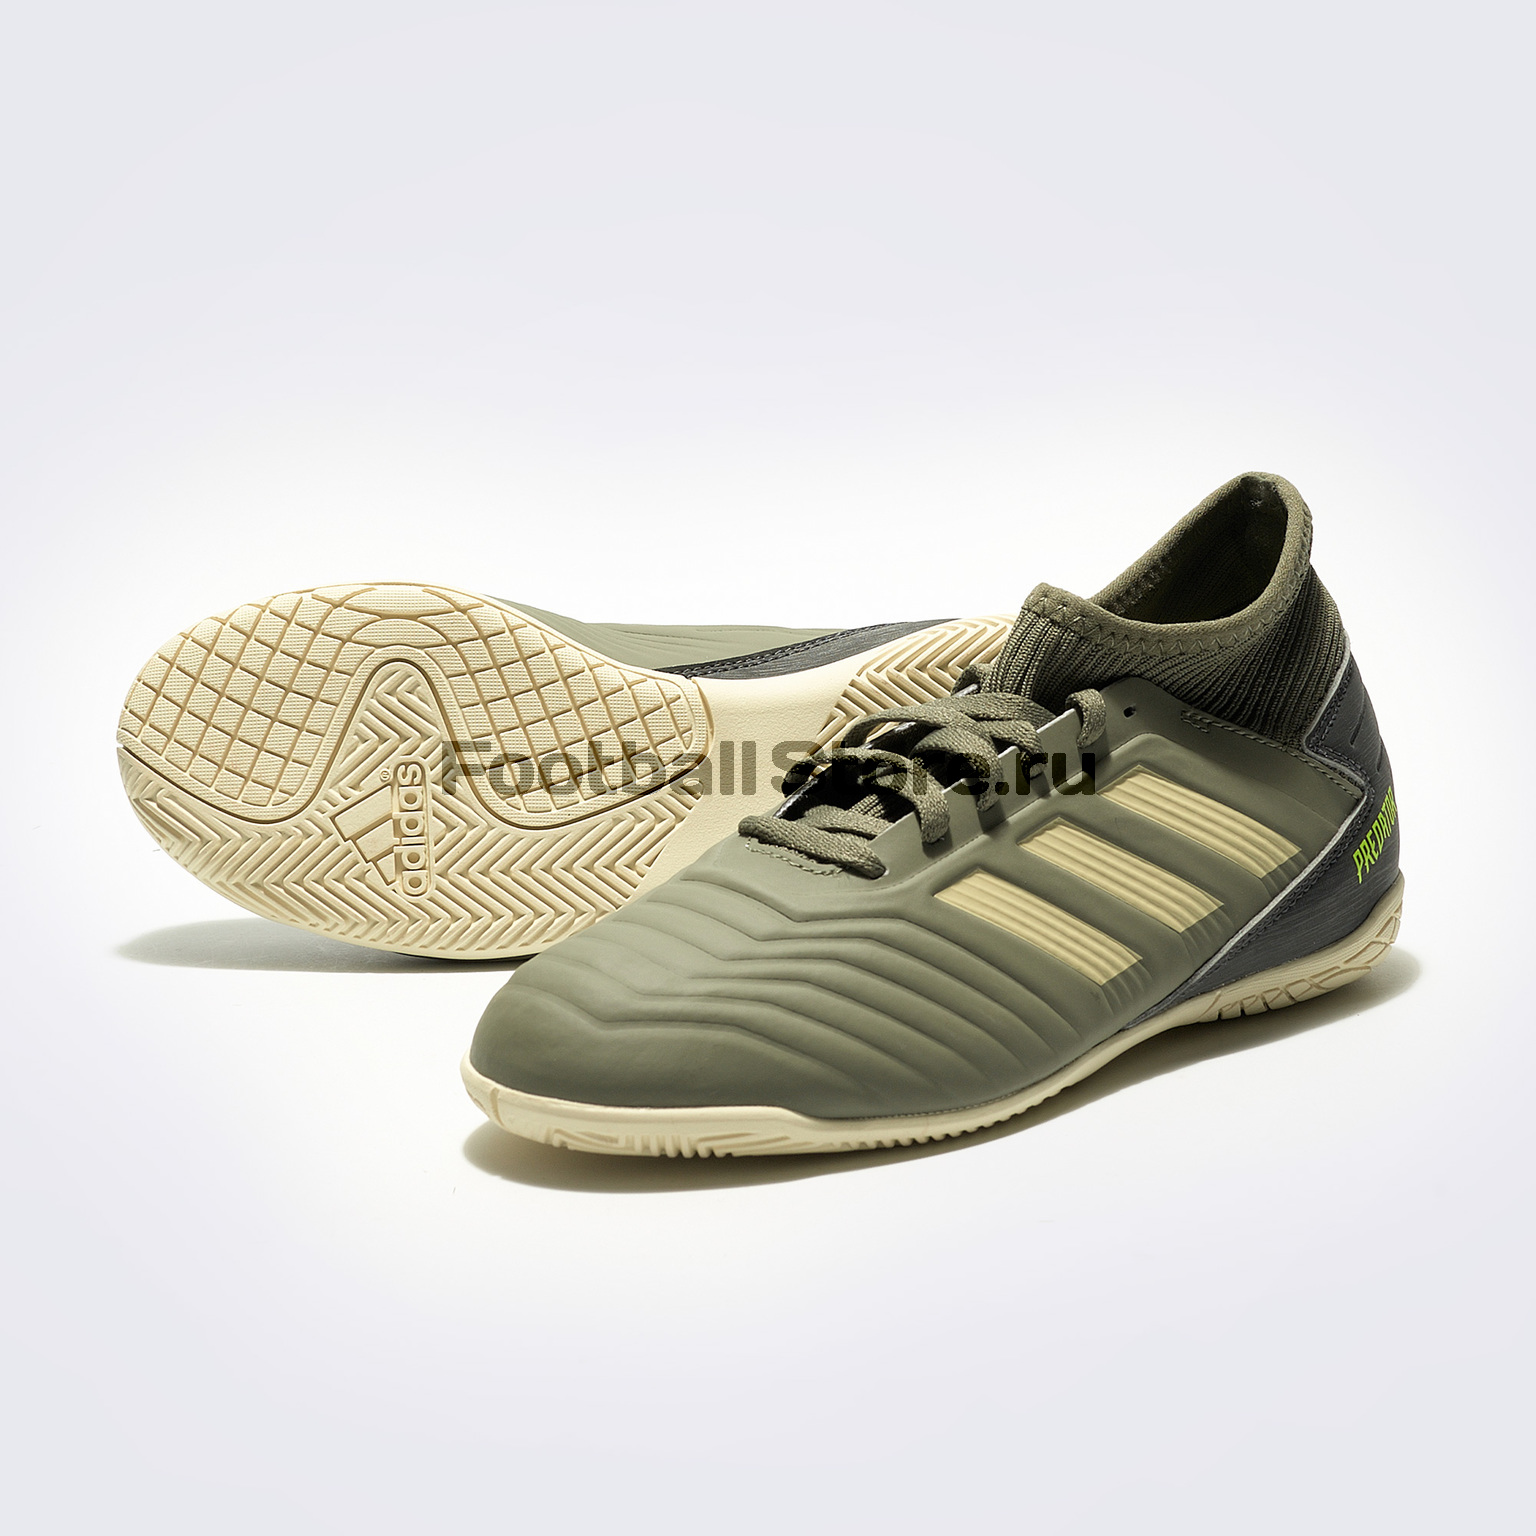 Купить Футзалки Adidas Predator 19.3 EF8219 – в магазине footballstore, цена, фото